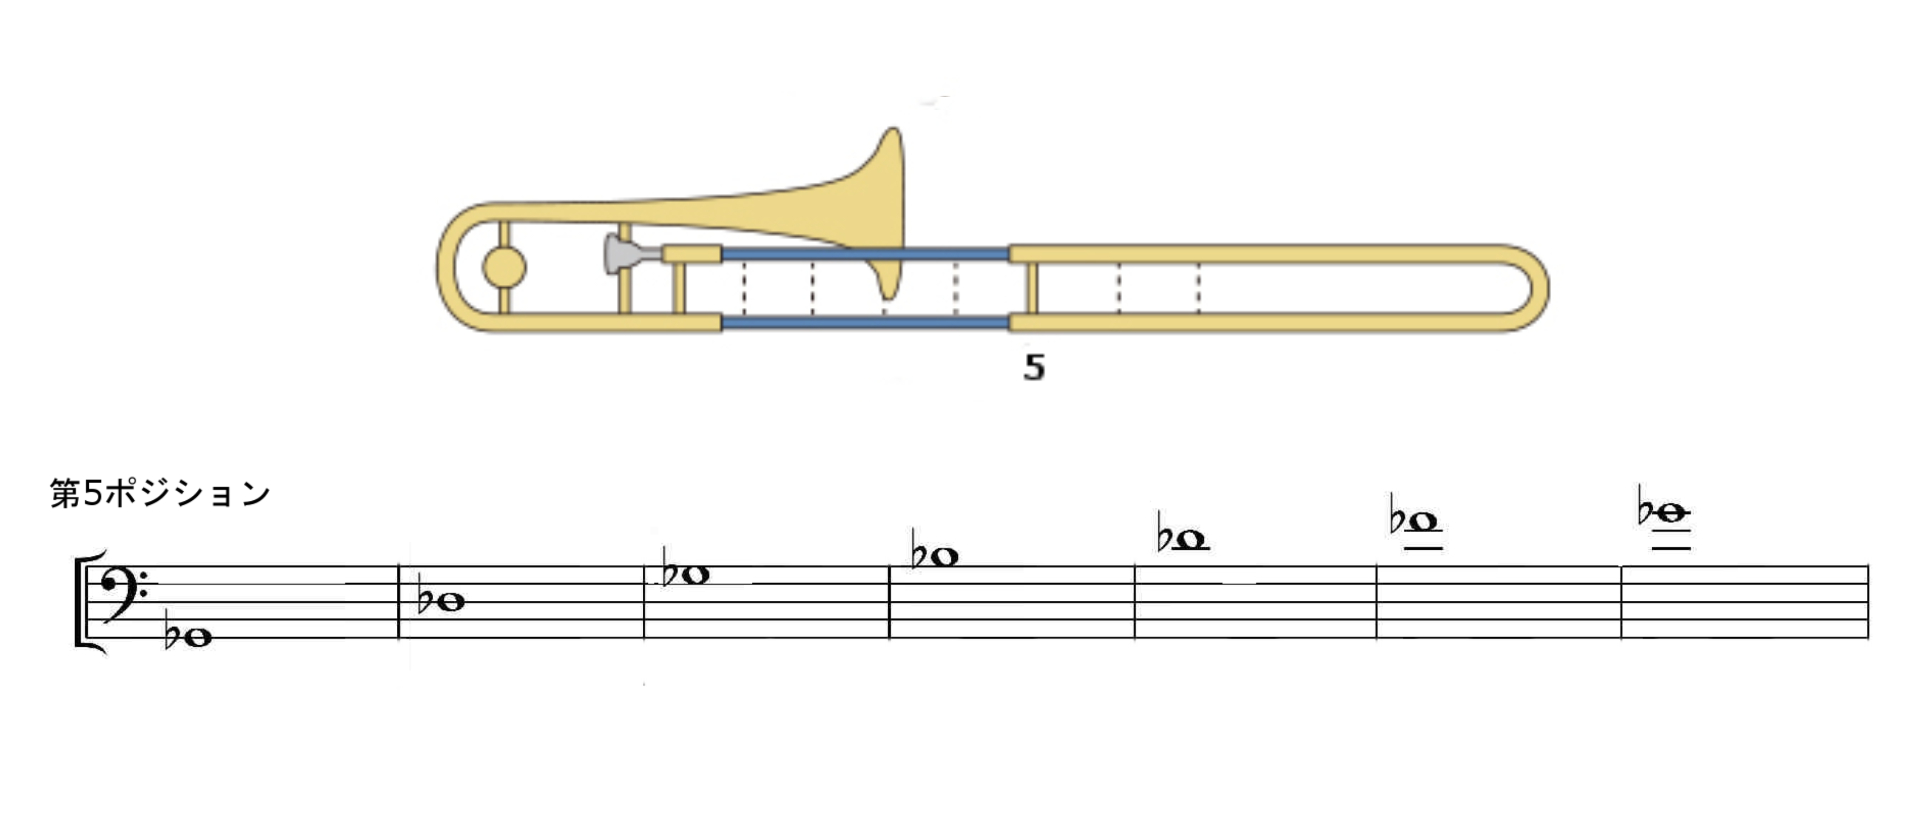 トロンボーン運指表のポジション位置 スライド番号覚え方を分かりやすく 音階表とf管 ドイツ音名 ト音記号の演奏方法も 音楽まにあ